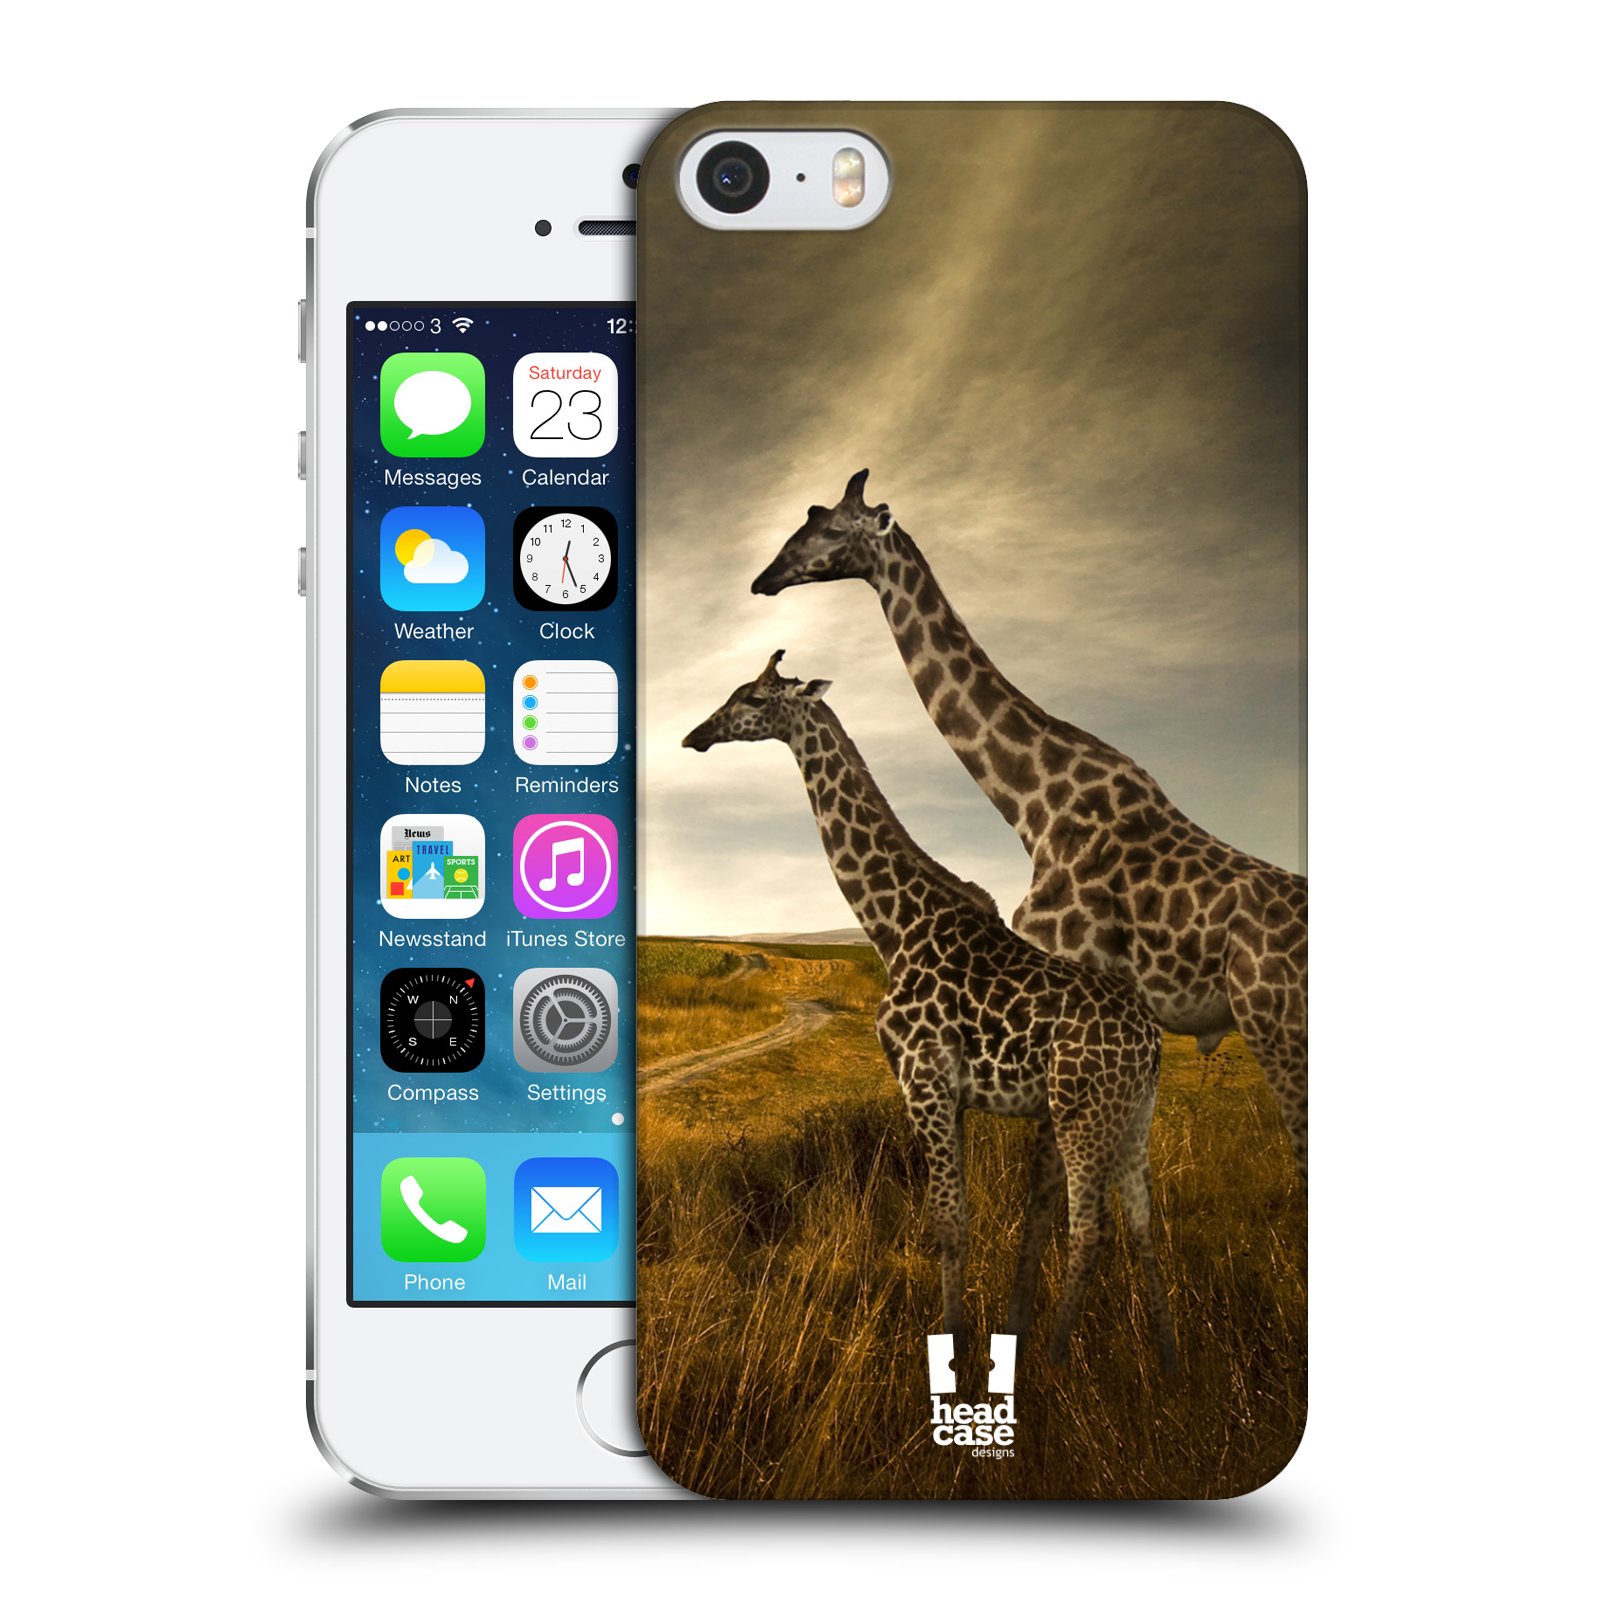 Zadní obal pro mobil Apple Iphone 5/5S/SE 2015 - HEAD CASE - Svět zvířat žirafy